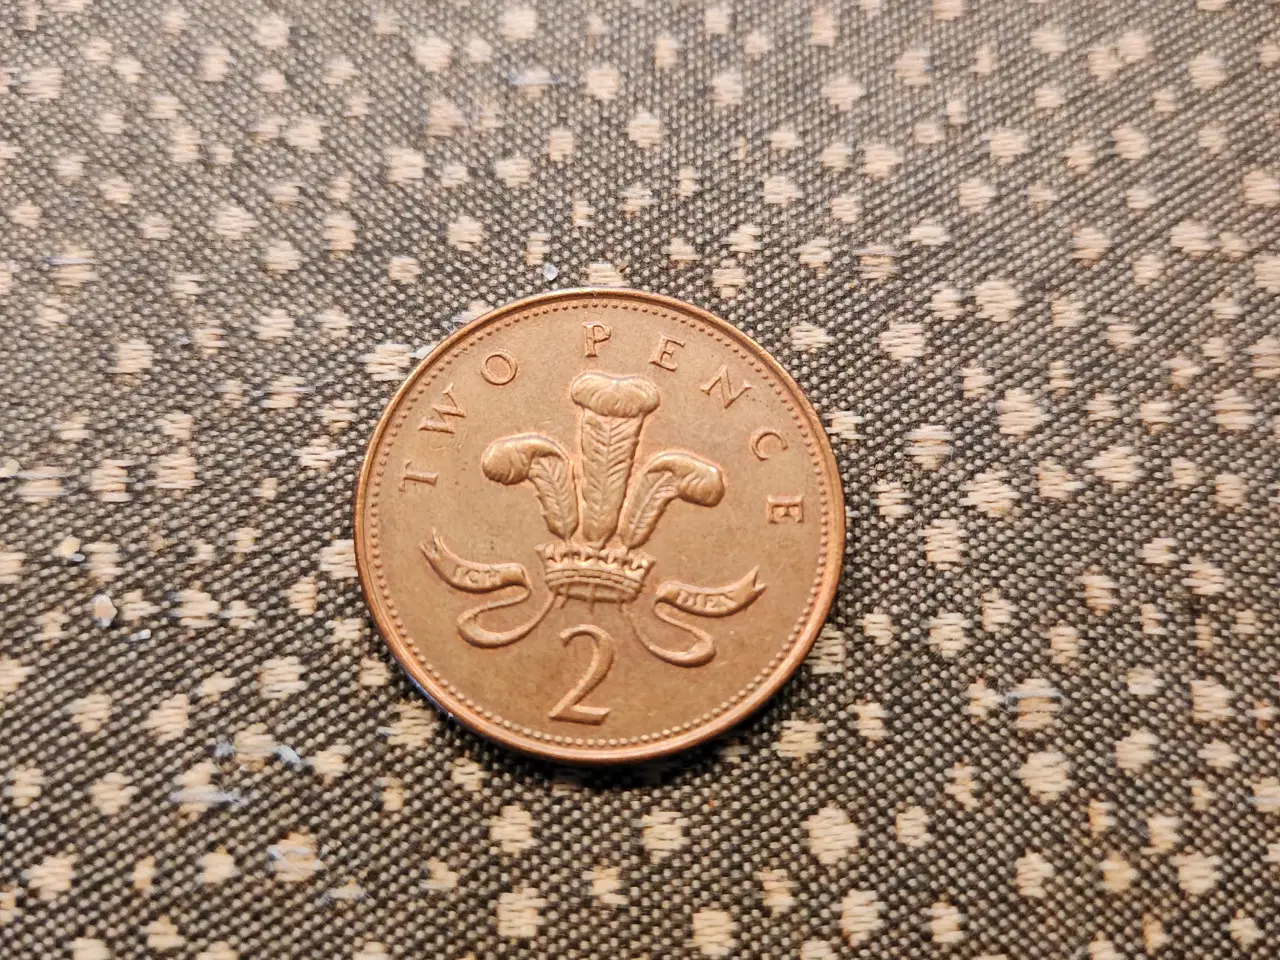 Billede 2 - Two Pence 2000, mønt fra Storbritannien